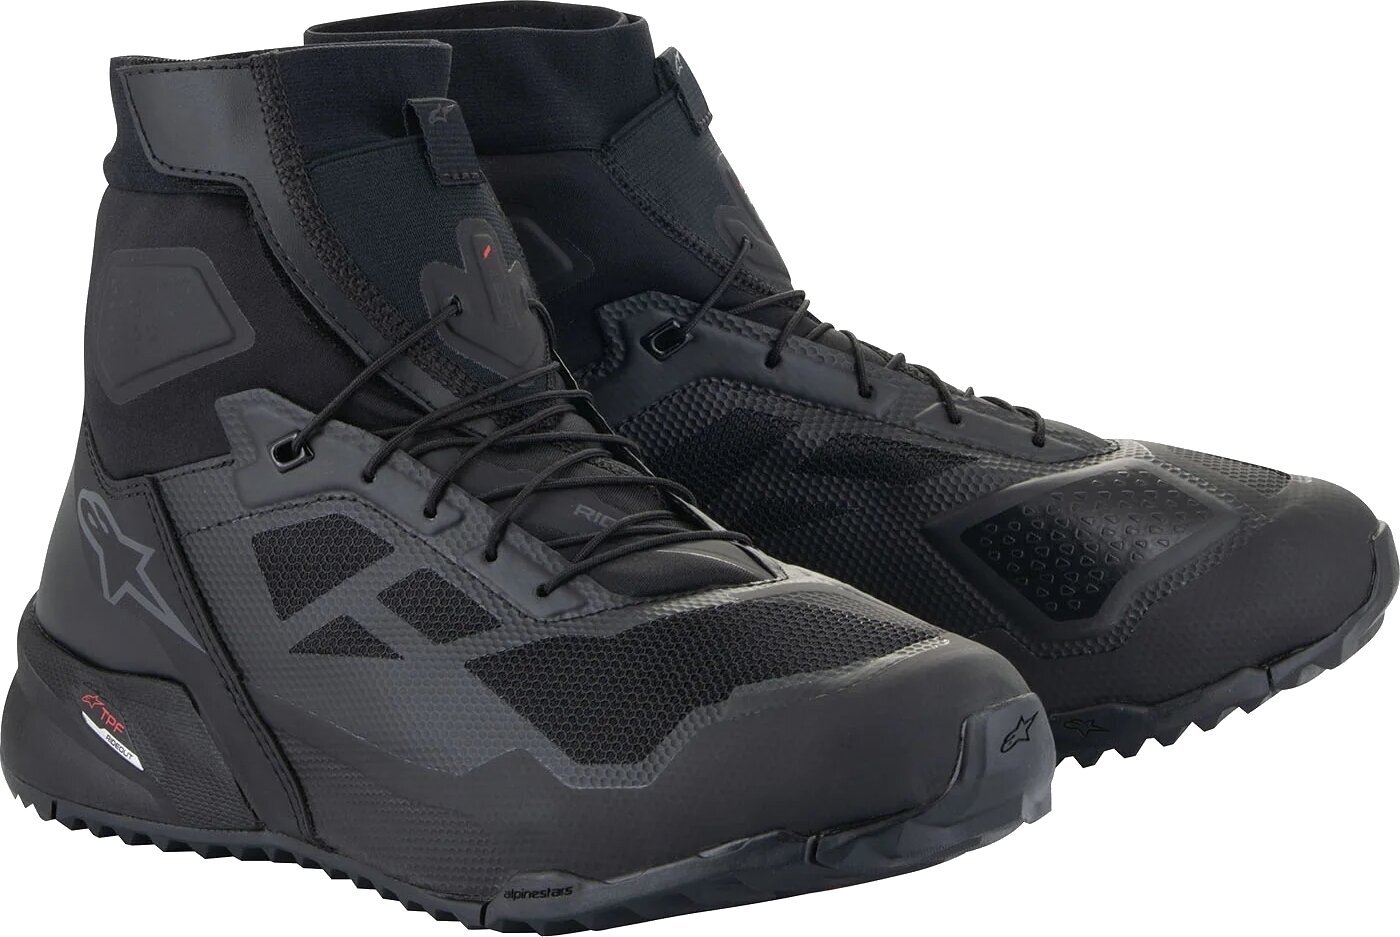 Topánky Alpinestars CR-1 Shoes Black/Dark Grey 41 Topánky